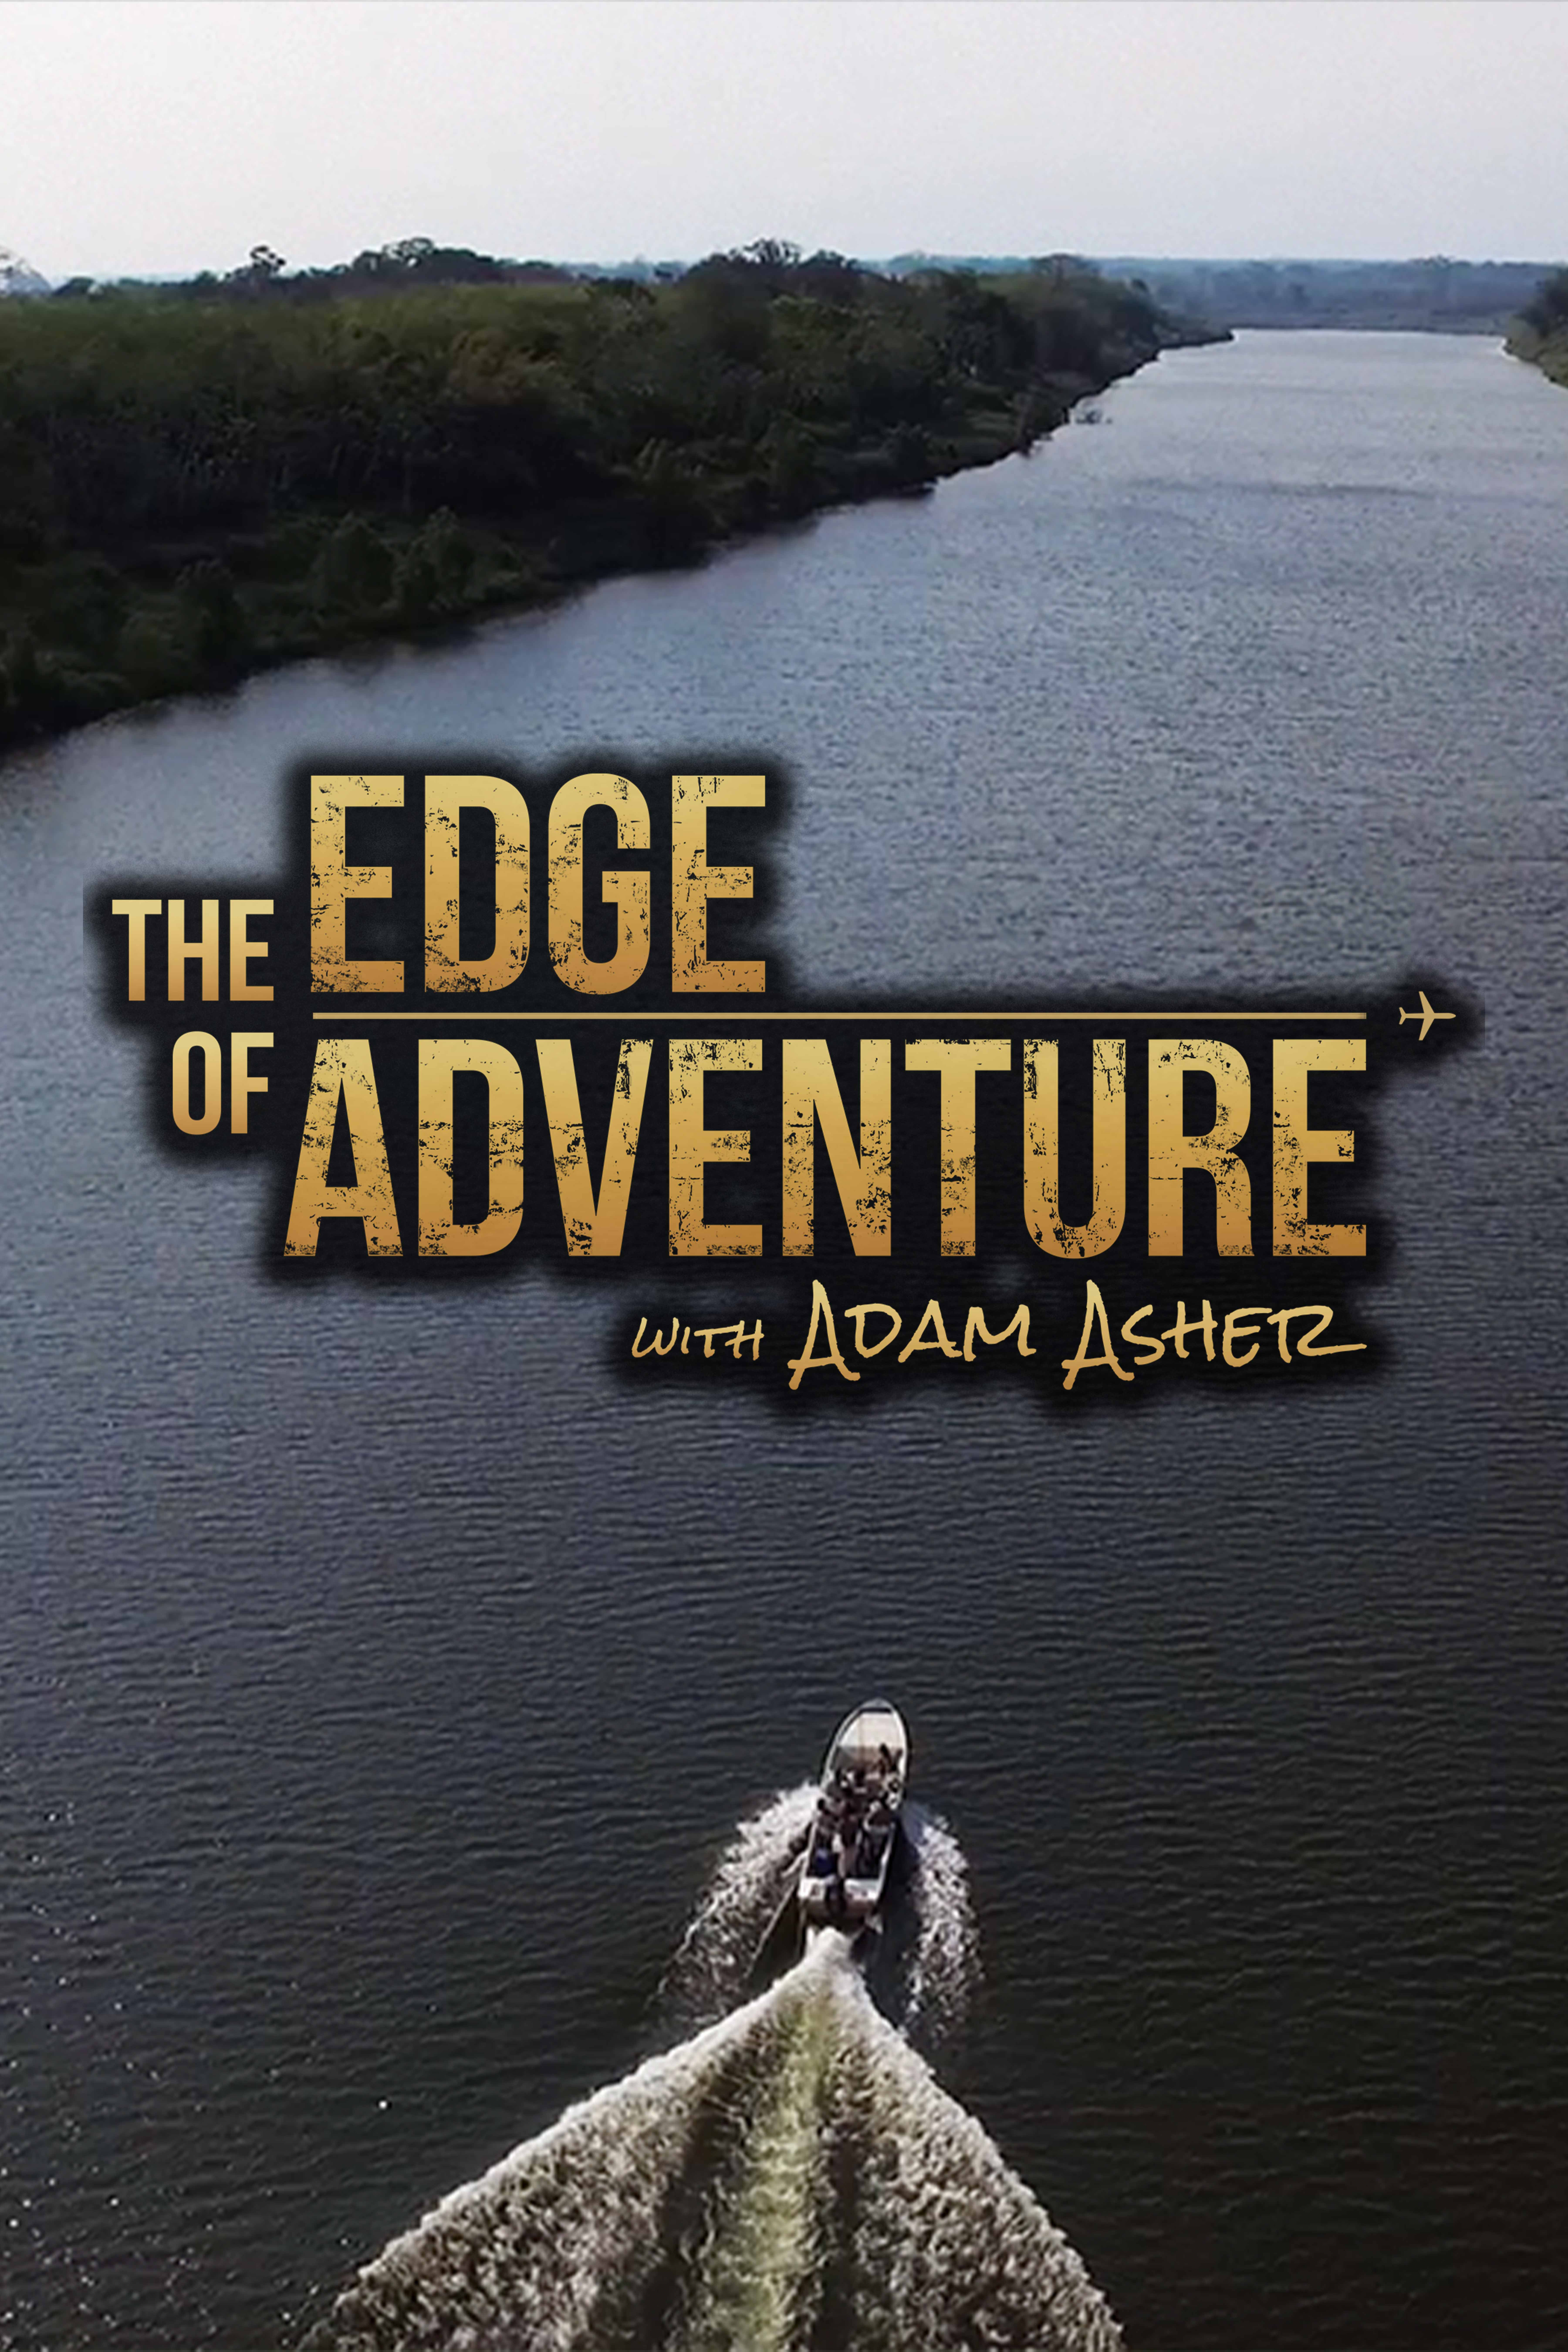 The Edge of Adventure